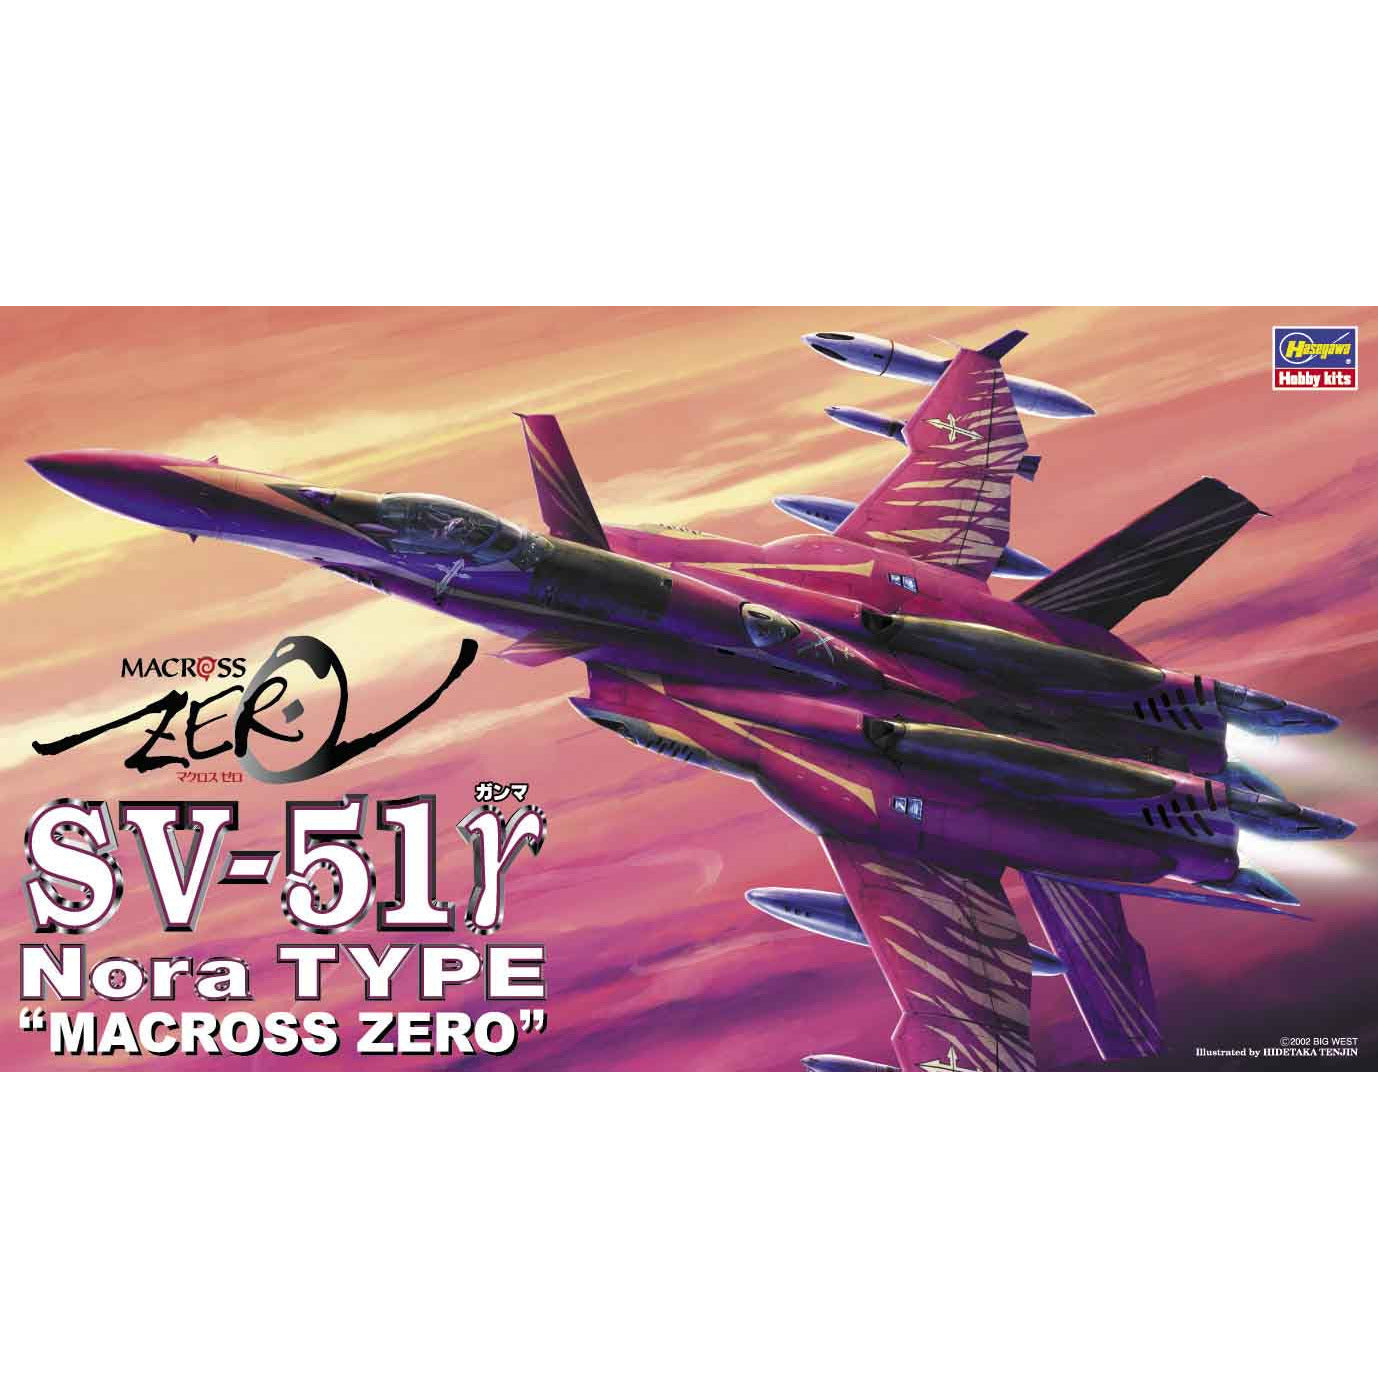 Macross Zero SV-51 Gamma Nora Type 1/72 #65716 by Hasegawa